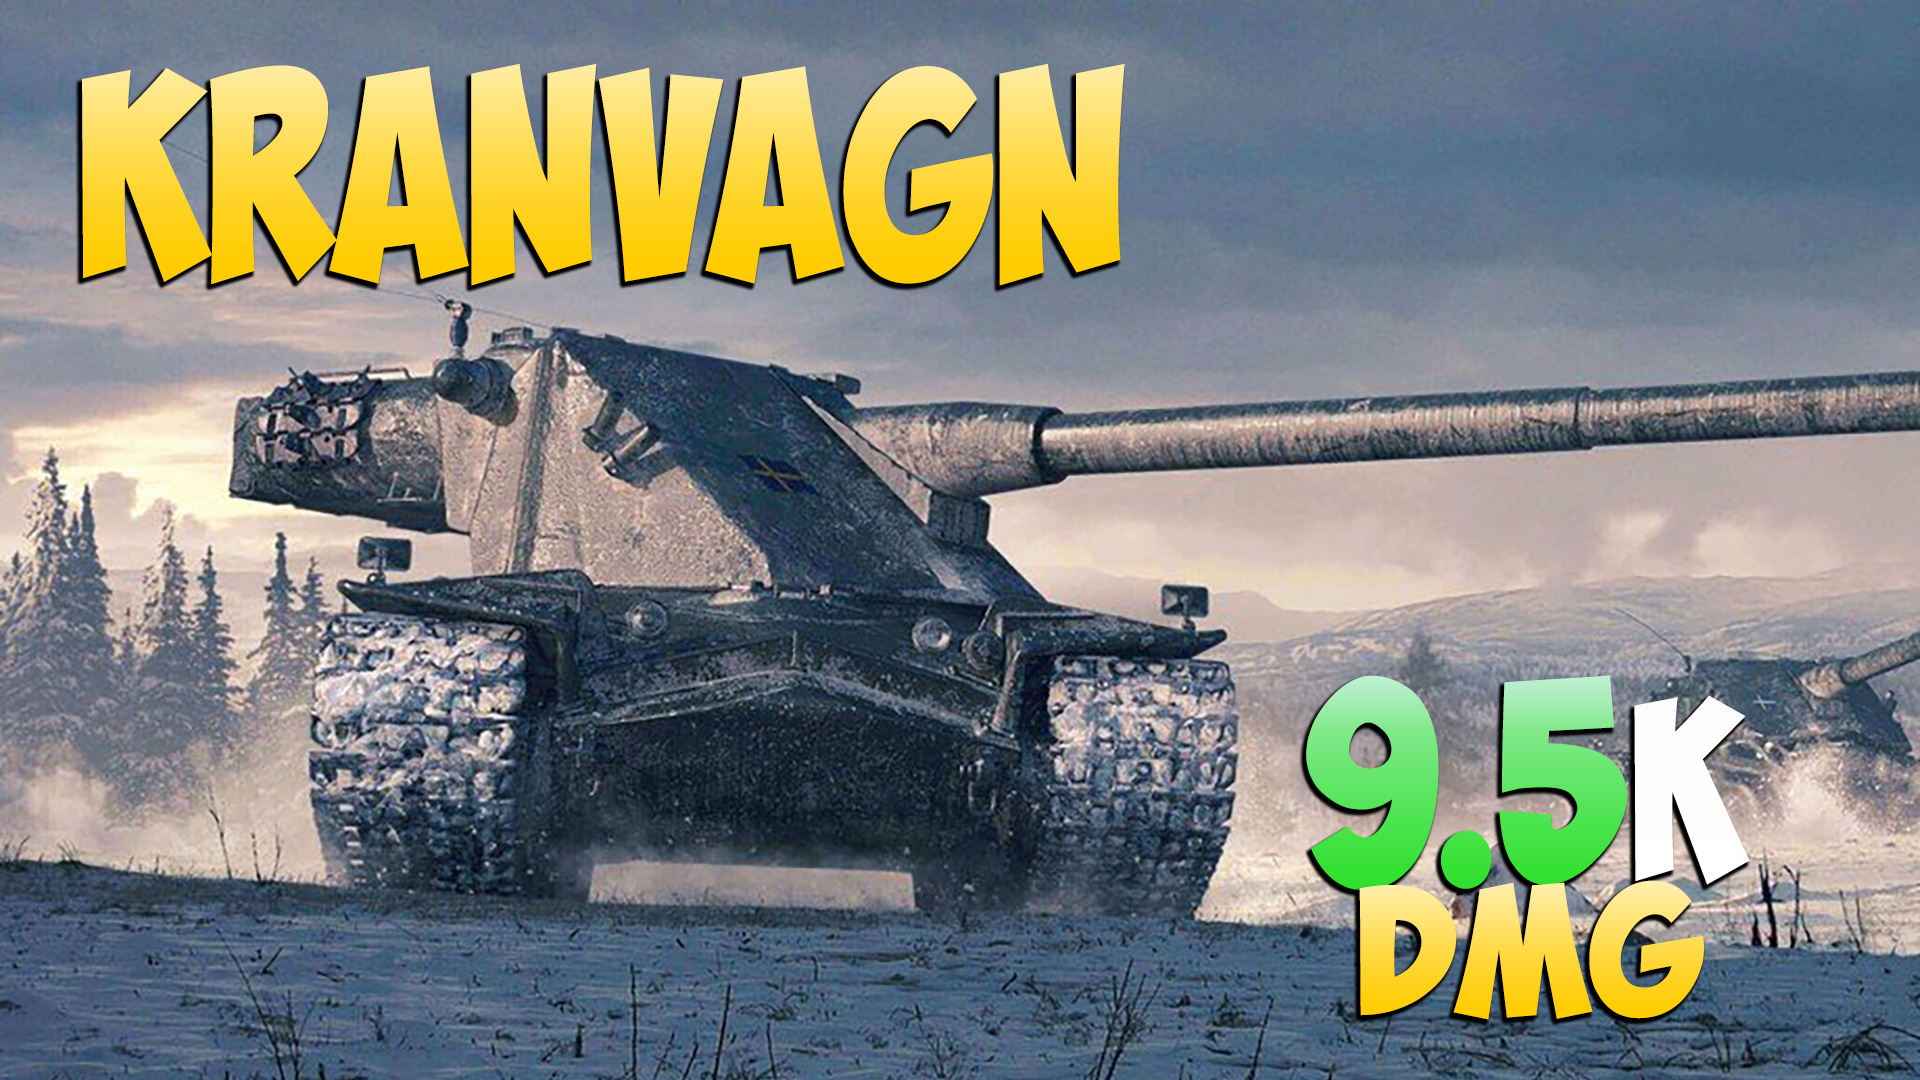 Kranvagn - 4 Фрагов 9.5K Урона - Стабильный! - Мир Танков